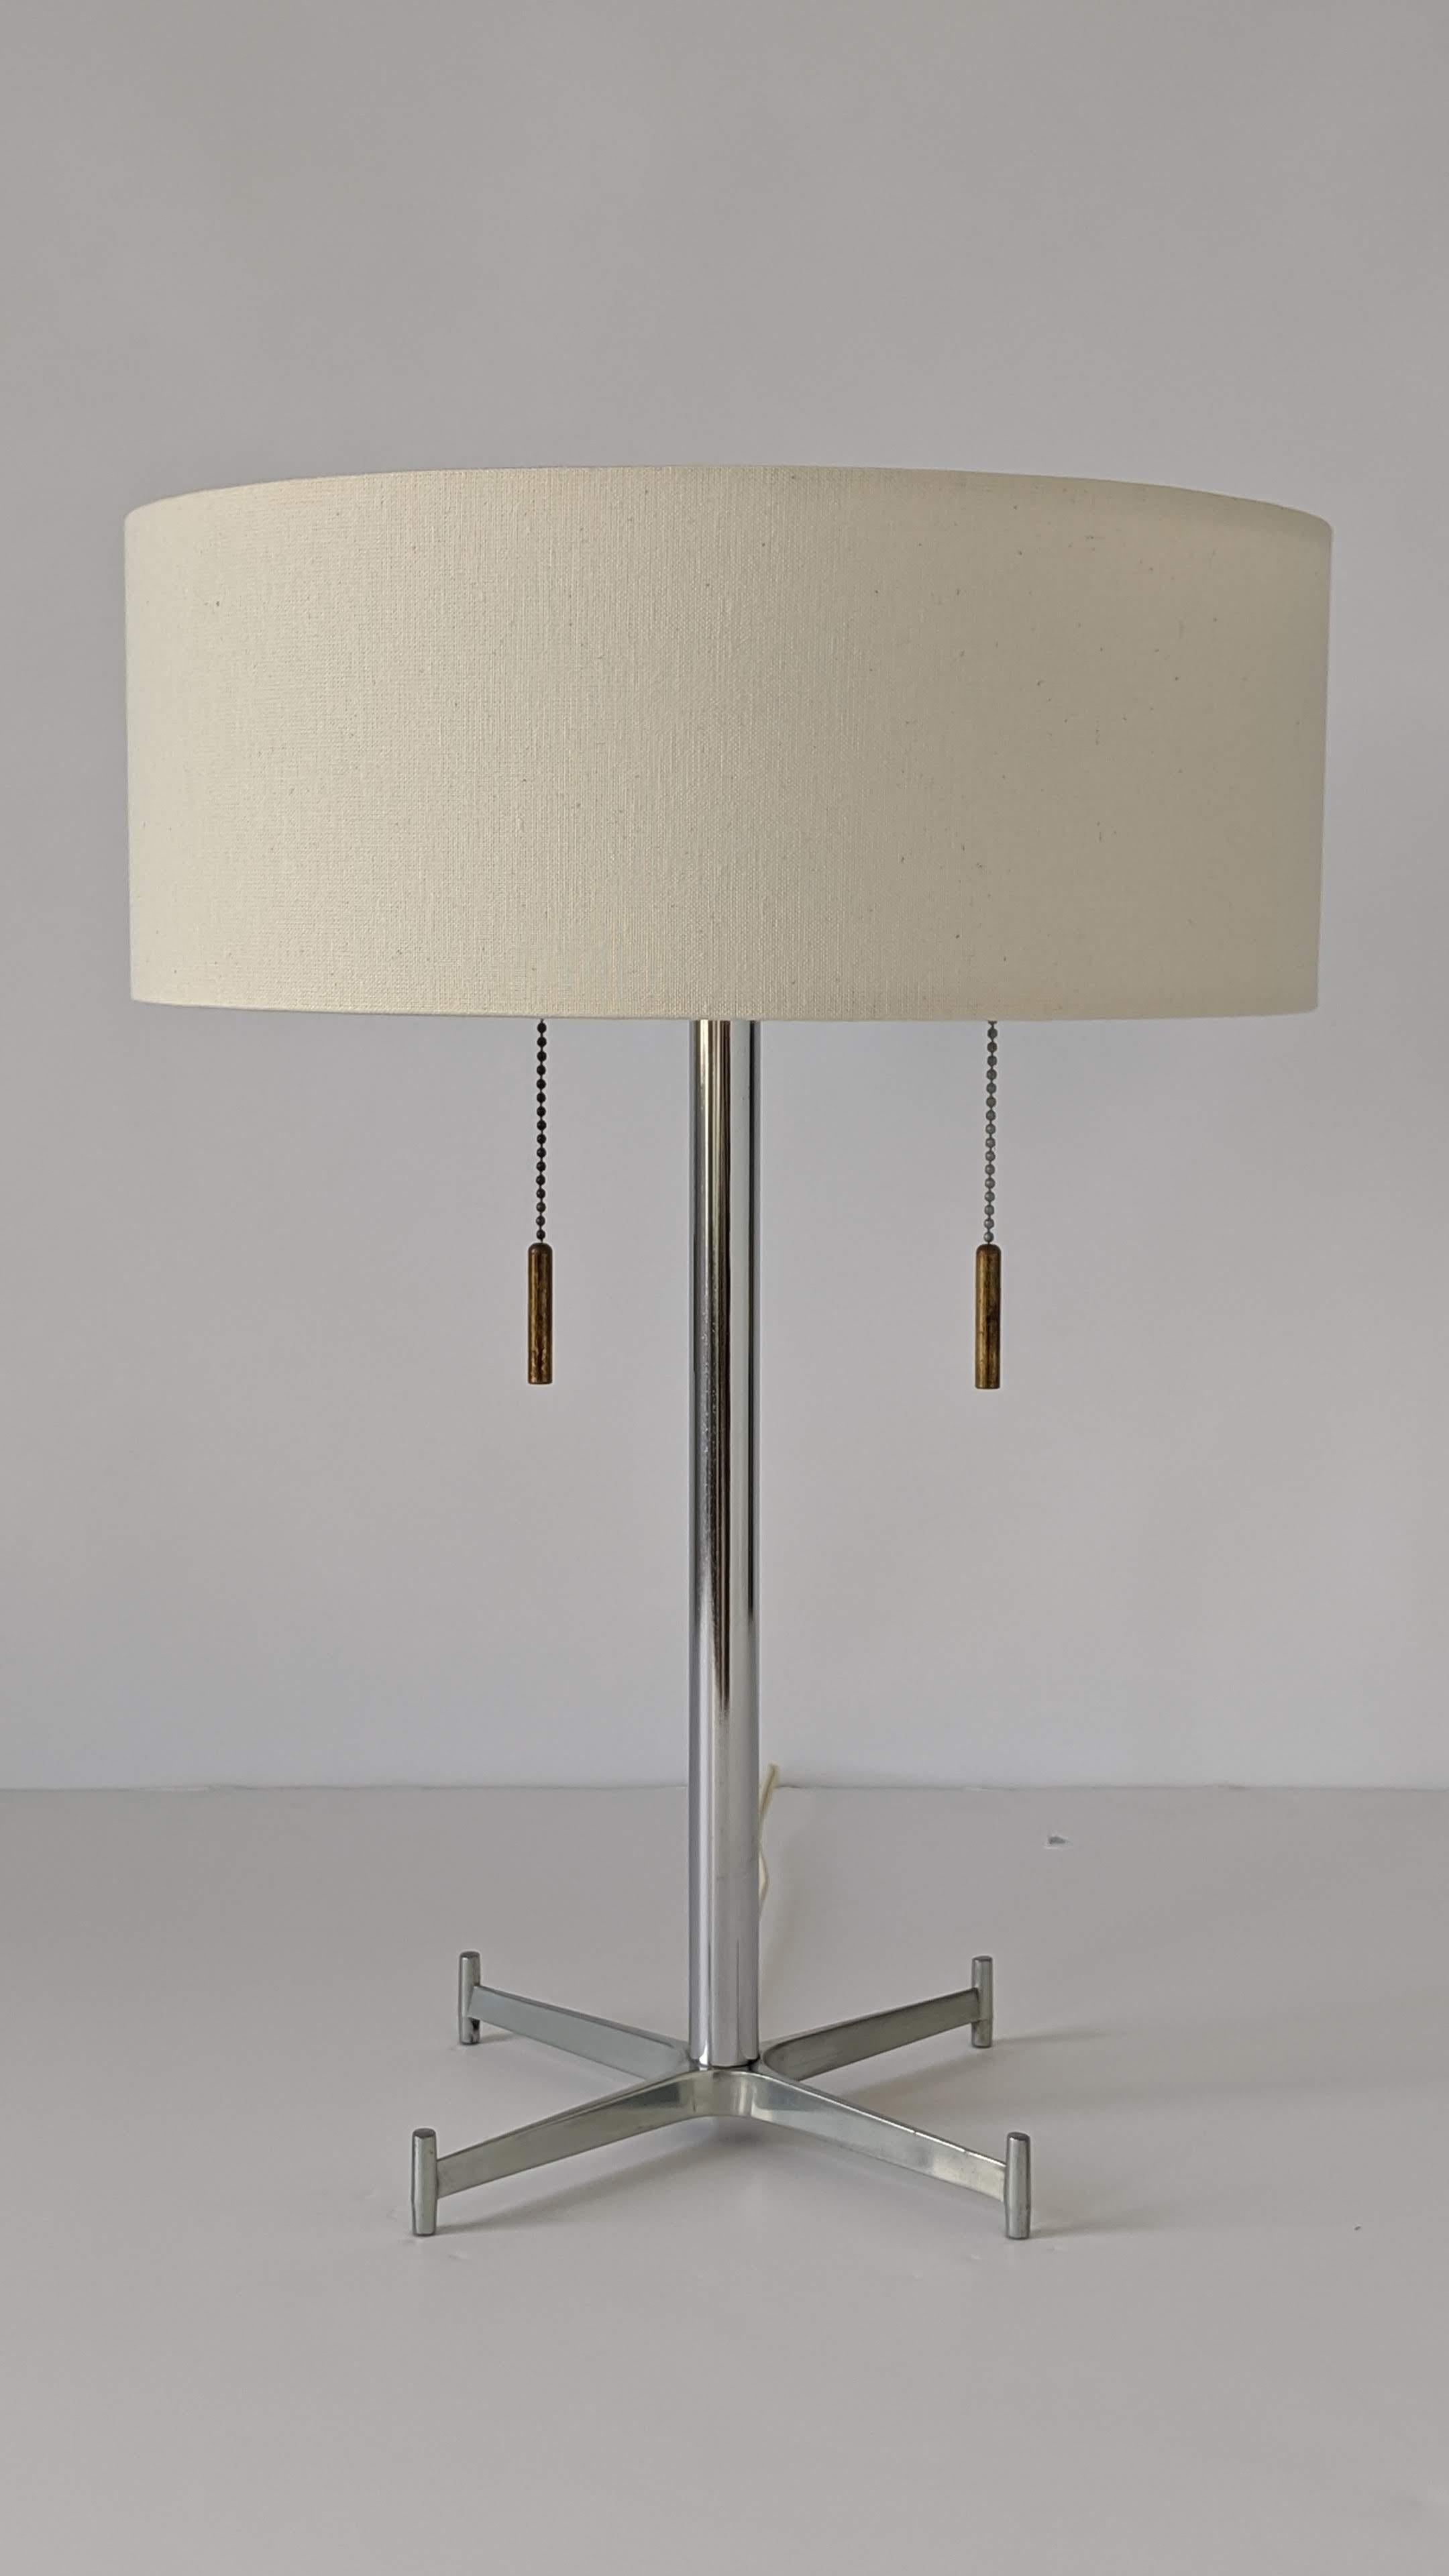 Lampe de table moderne minimaliste de Gerald Thurston.

Construction solide et bien faite.

Deux douilles E26 de 60 watts avec une chaîne de traction individuelle et des ferrures en laiton épais patiné faciles à saisir.

Diffuseur percé